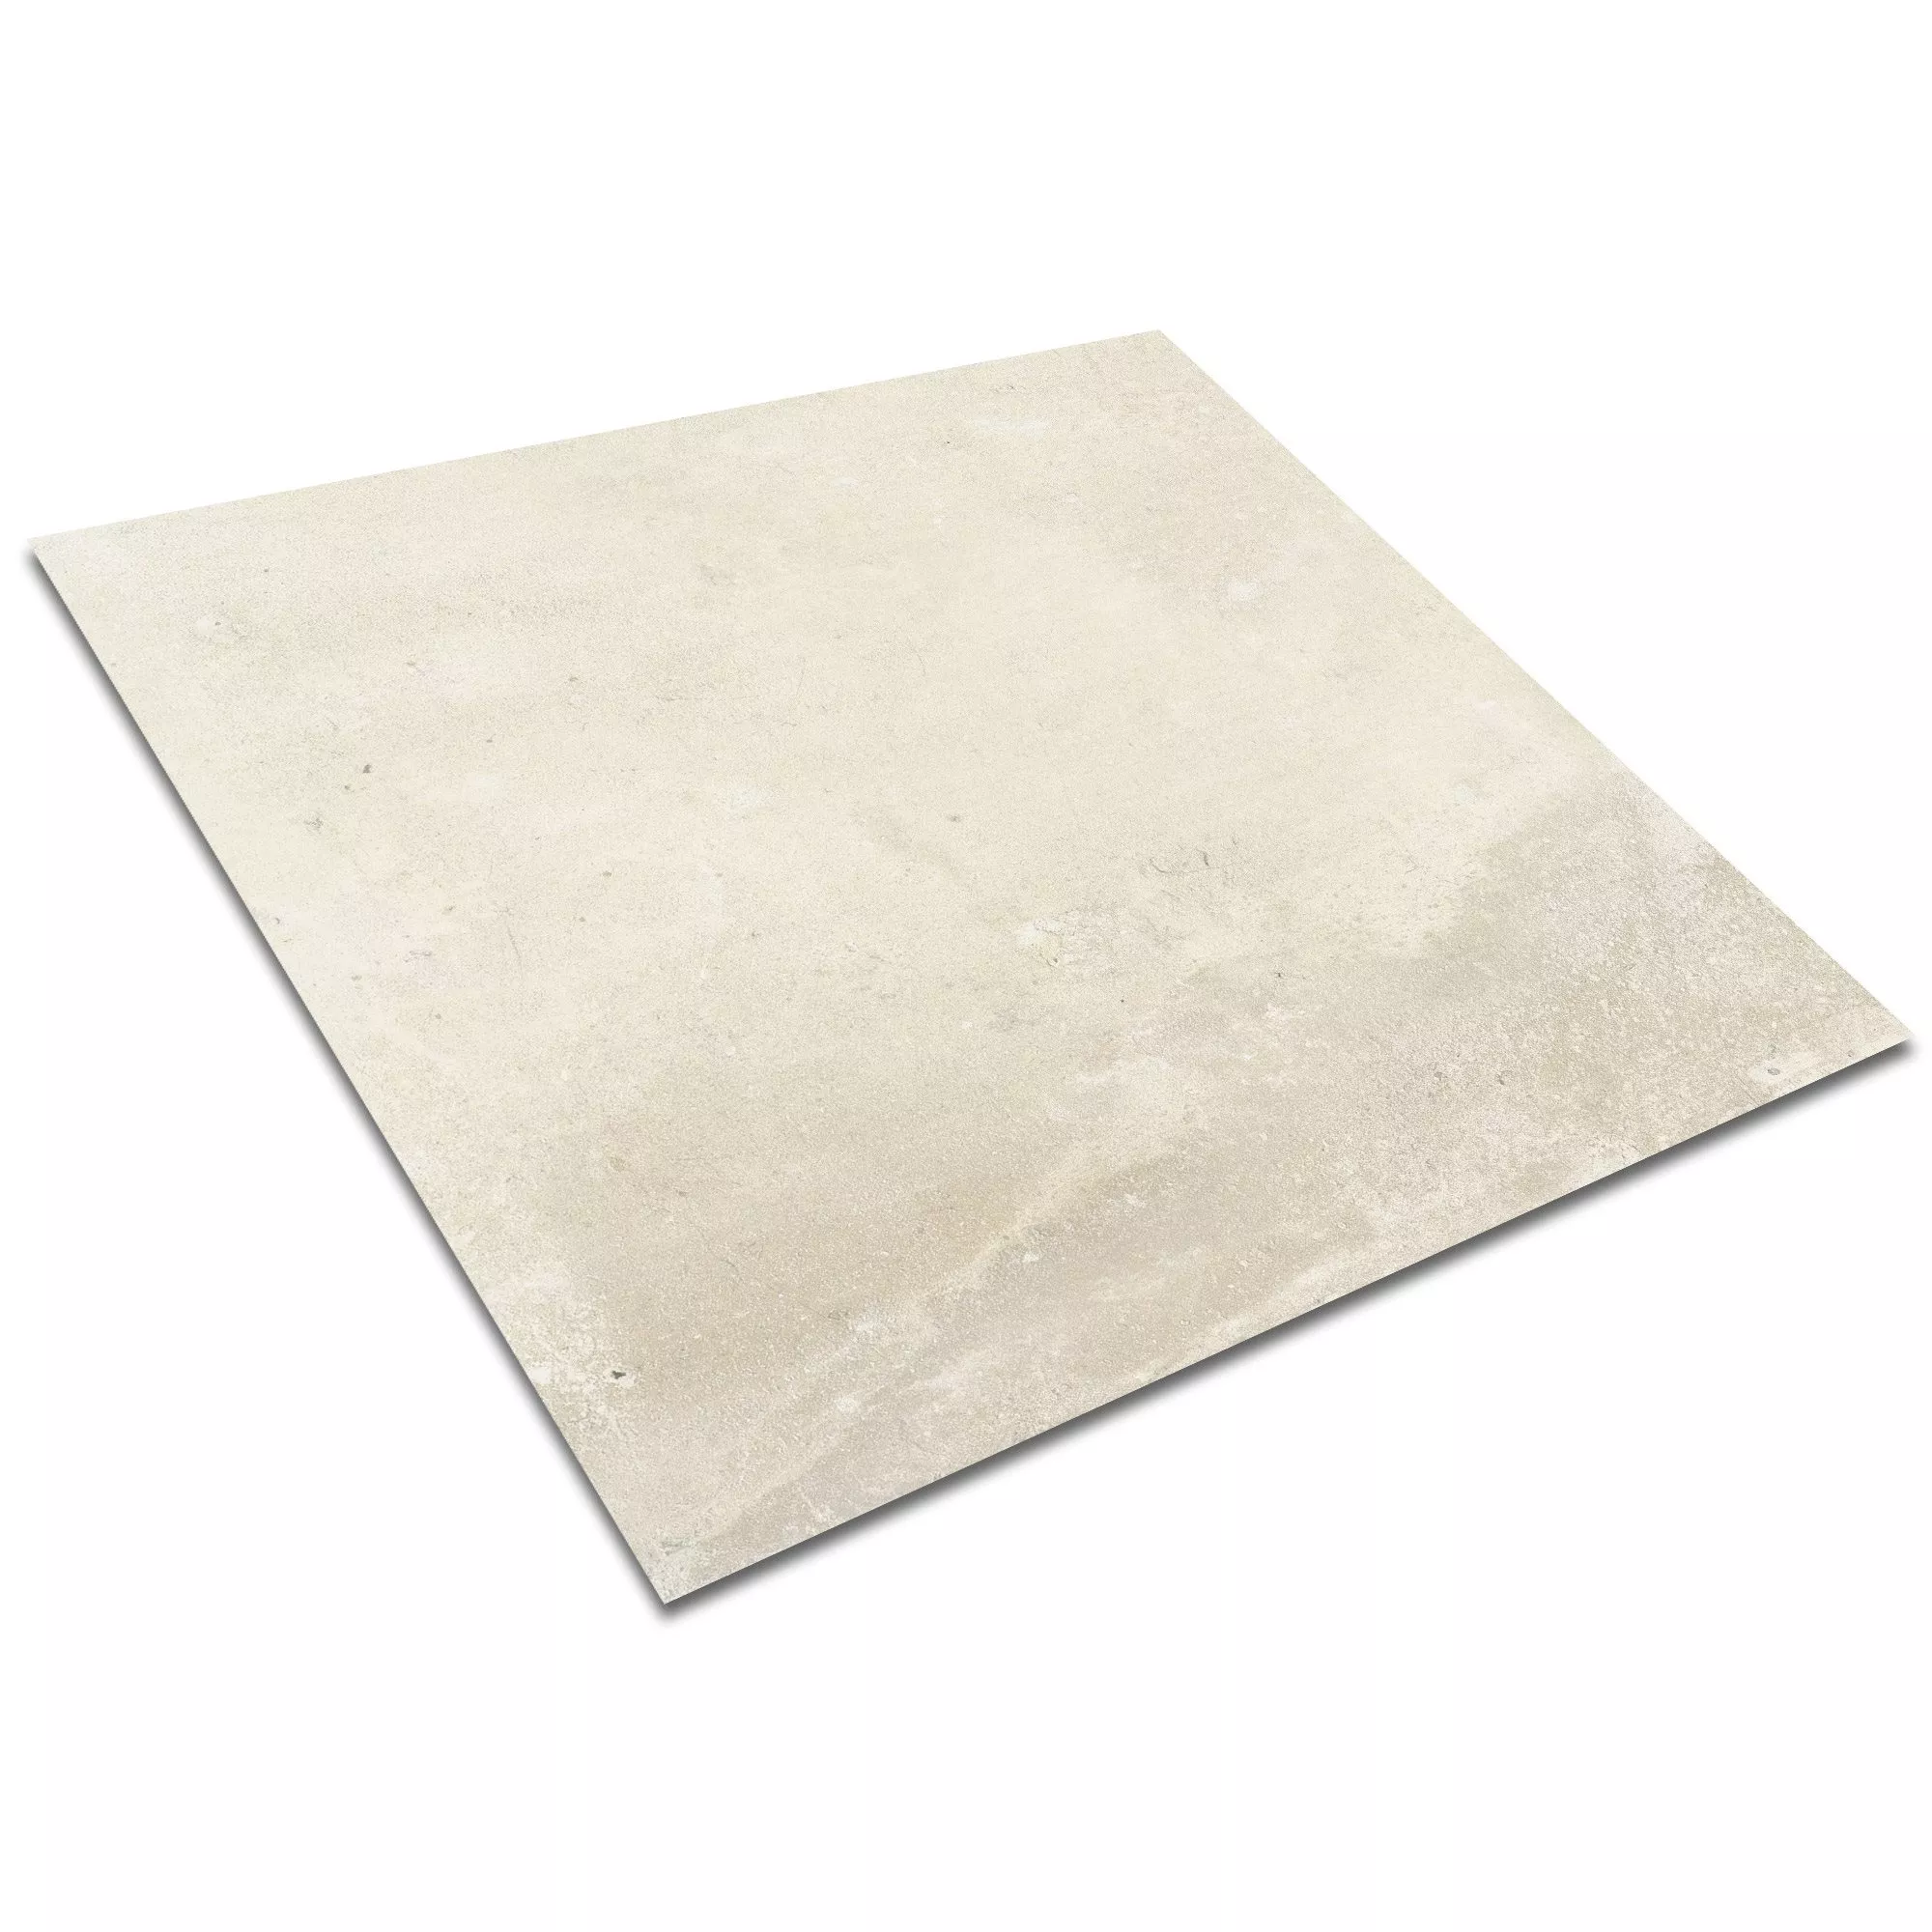 Sample Floor Tiles Cement Optic Maryland Beige 60x60cm